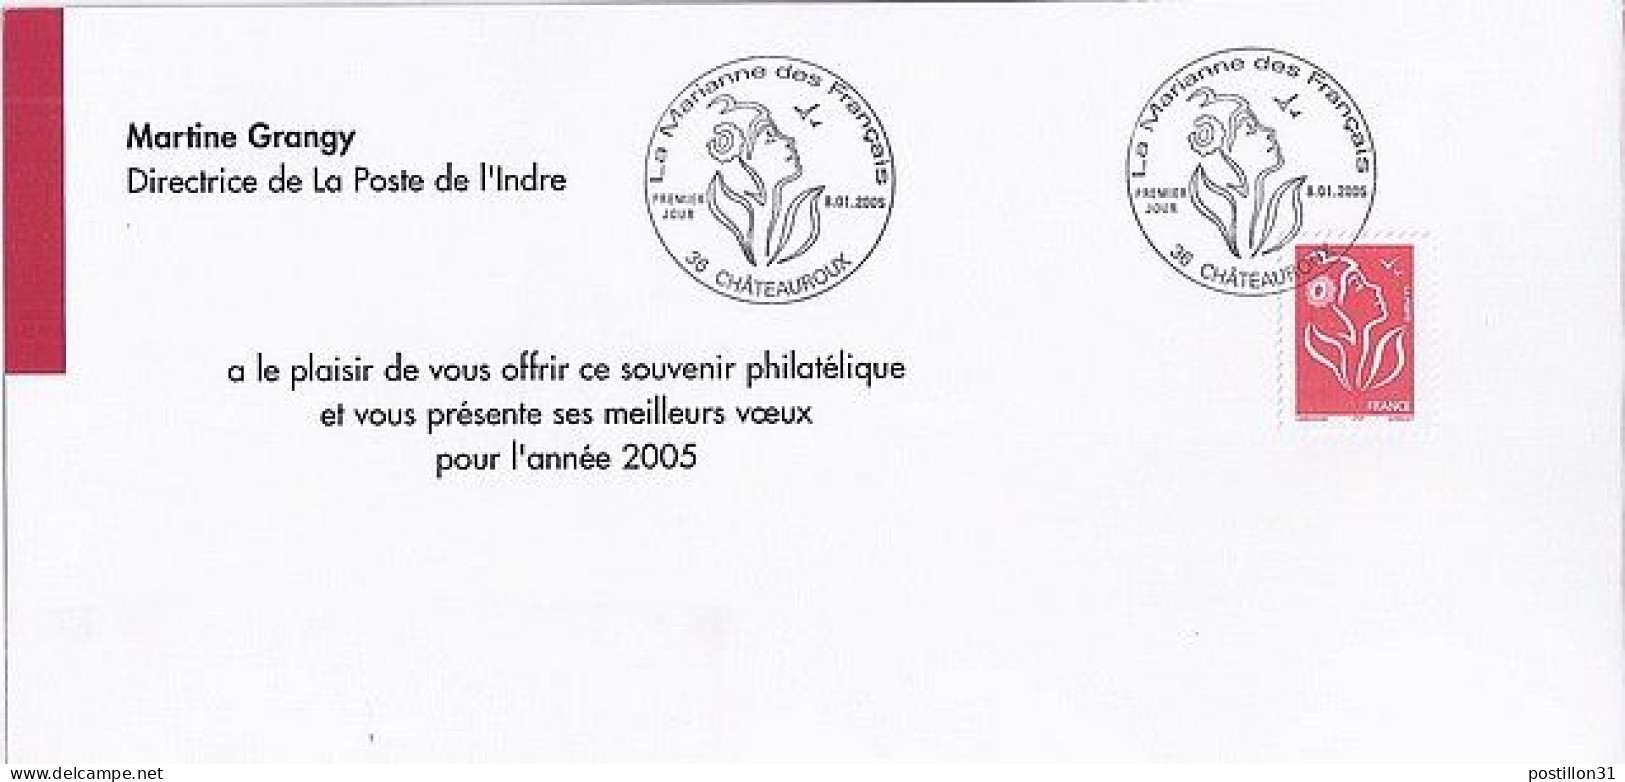 LAMOUCHE N° 3724 S/CARTON OFF. DE VOEUX DE POSTE DE CHATEAUROUX/8.1.05 - 2004-2008 Marianna Di Lamouche